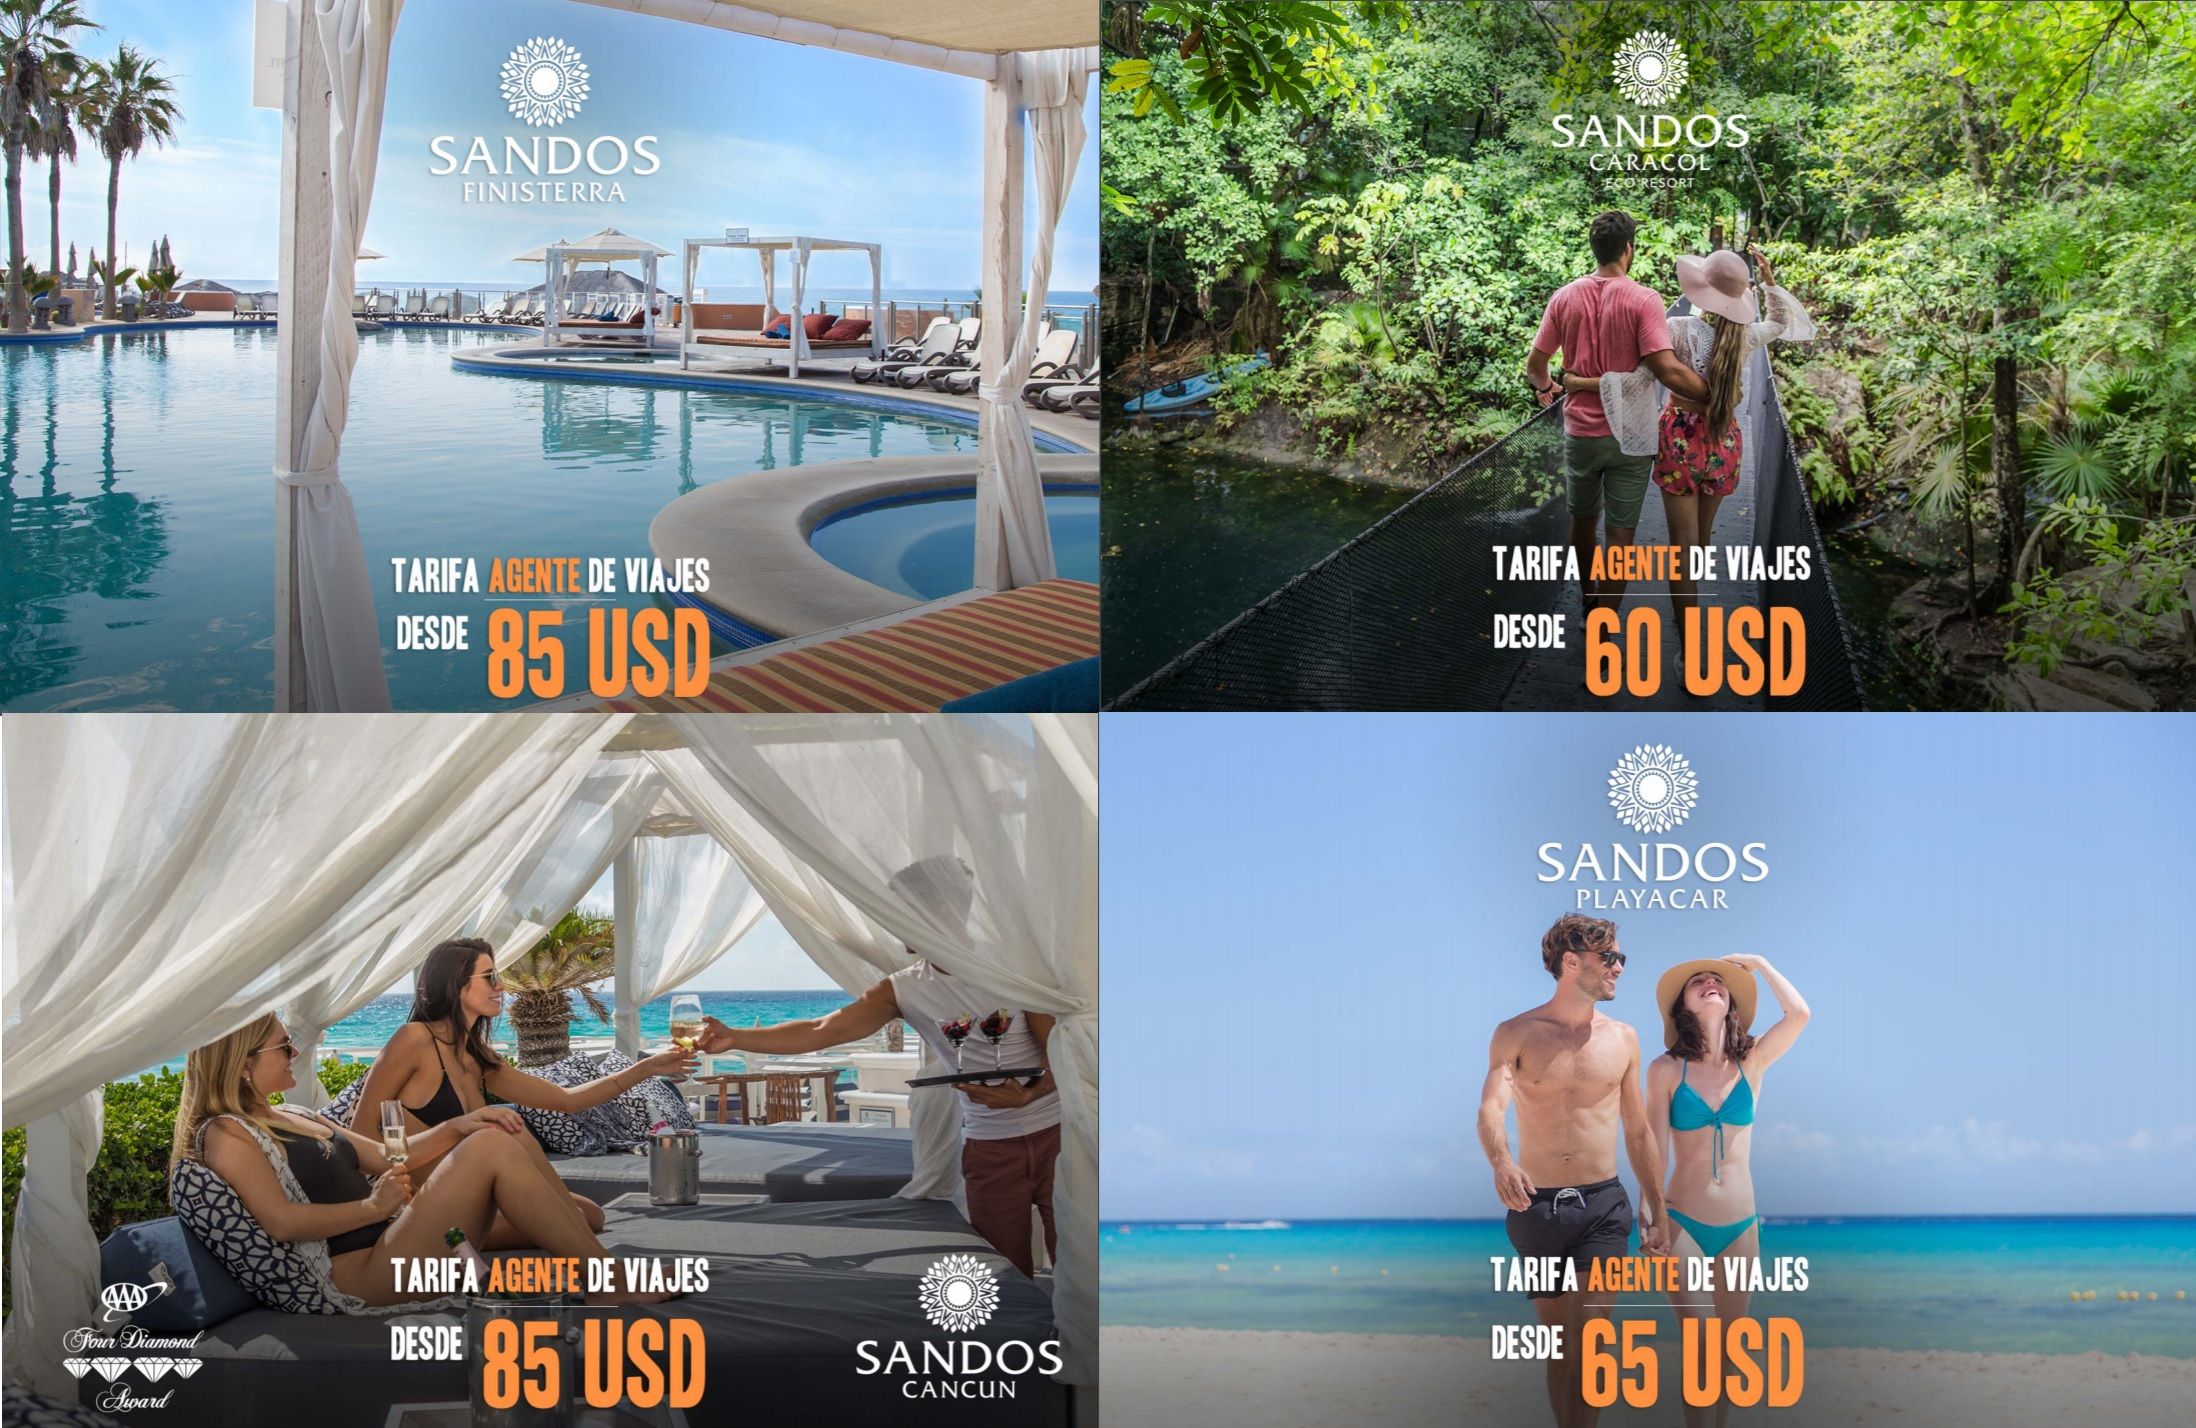 Sandos Hotels lanza tarifas especial para Agente de Viajes